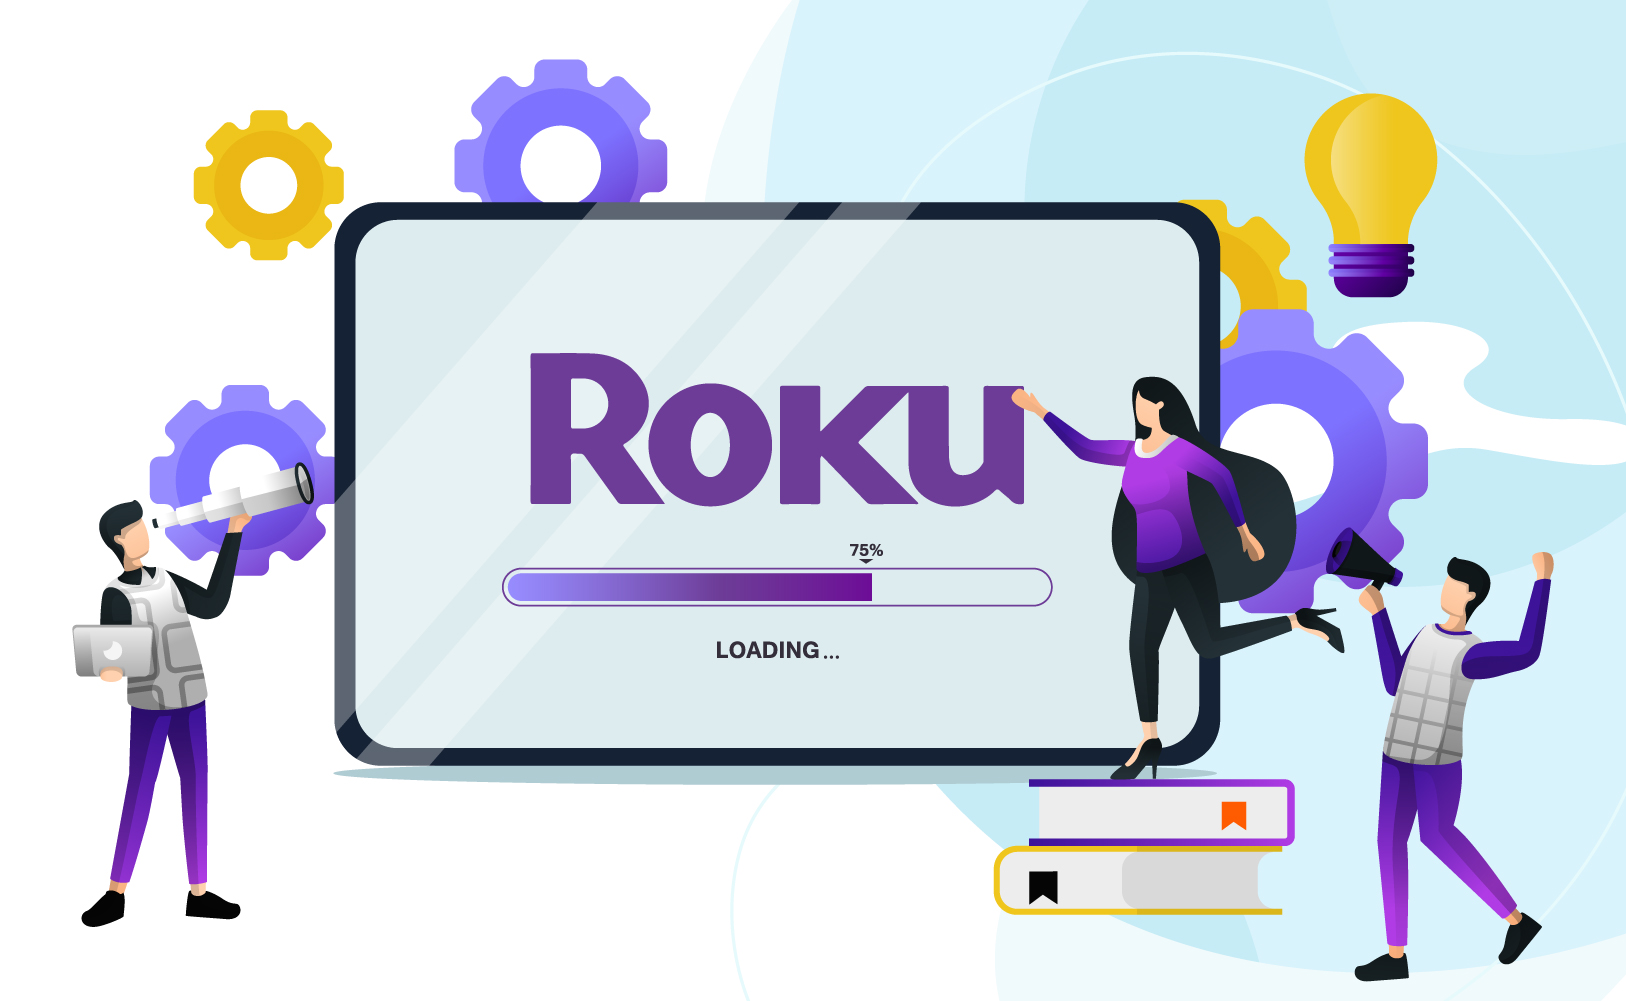 نظام Roku مُحدَّث